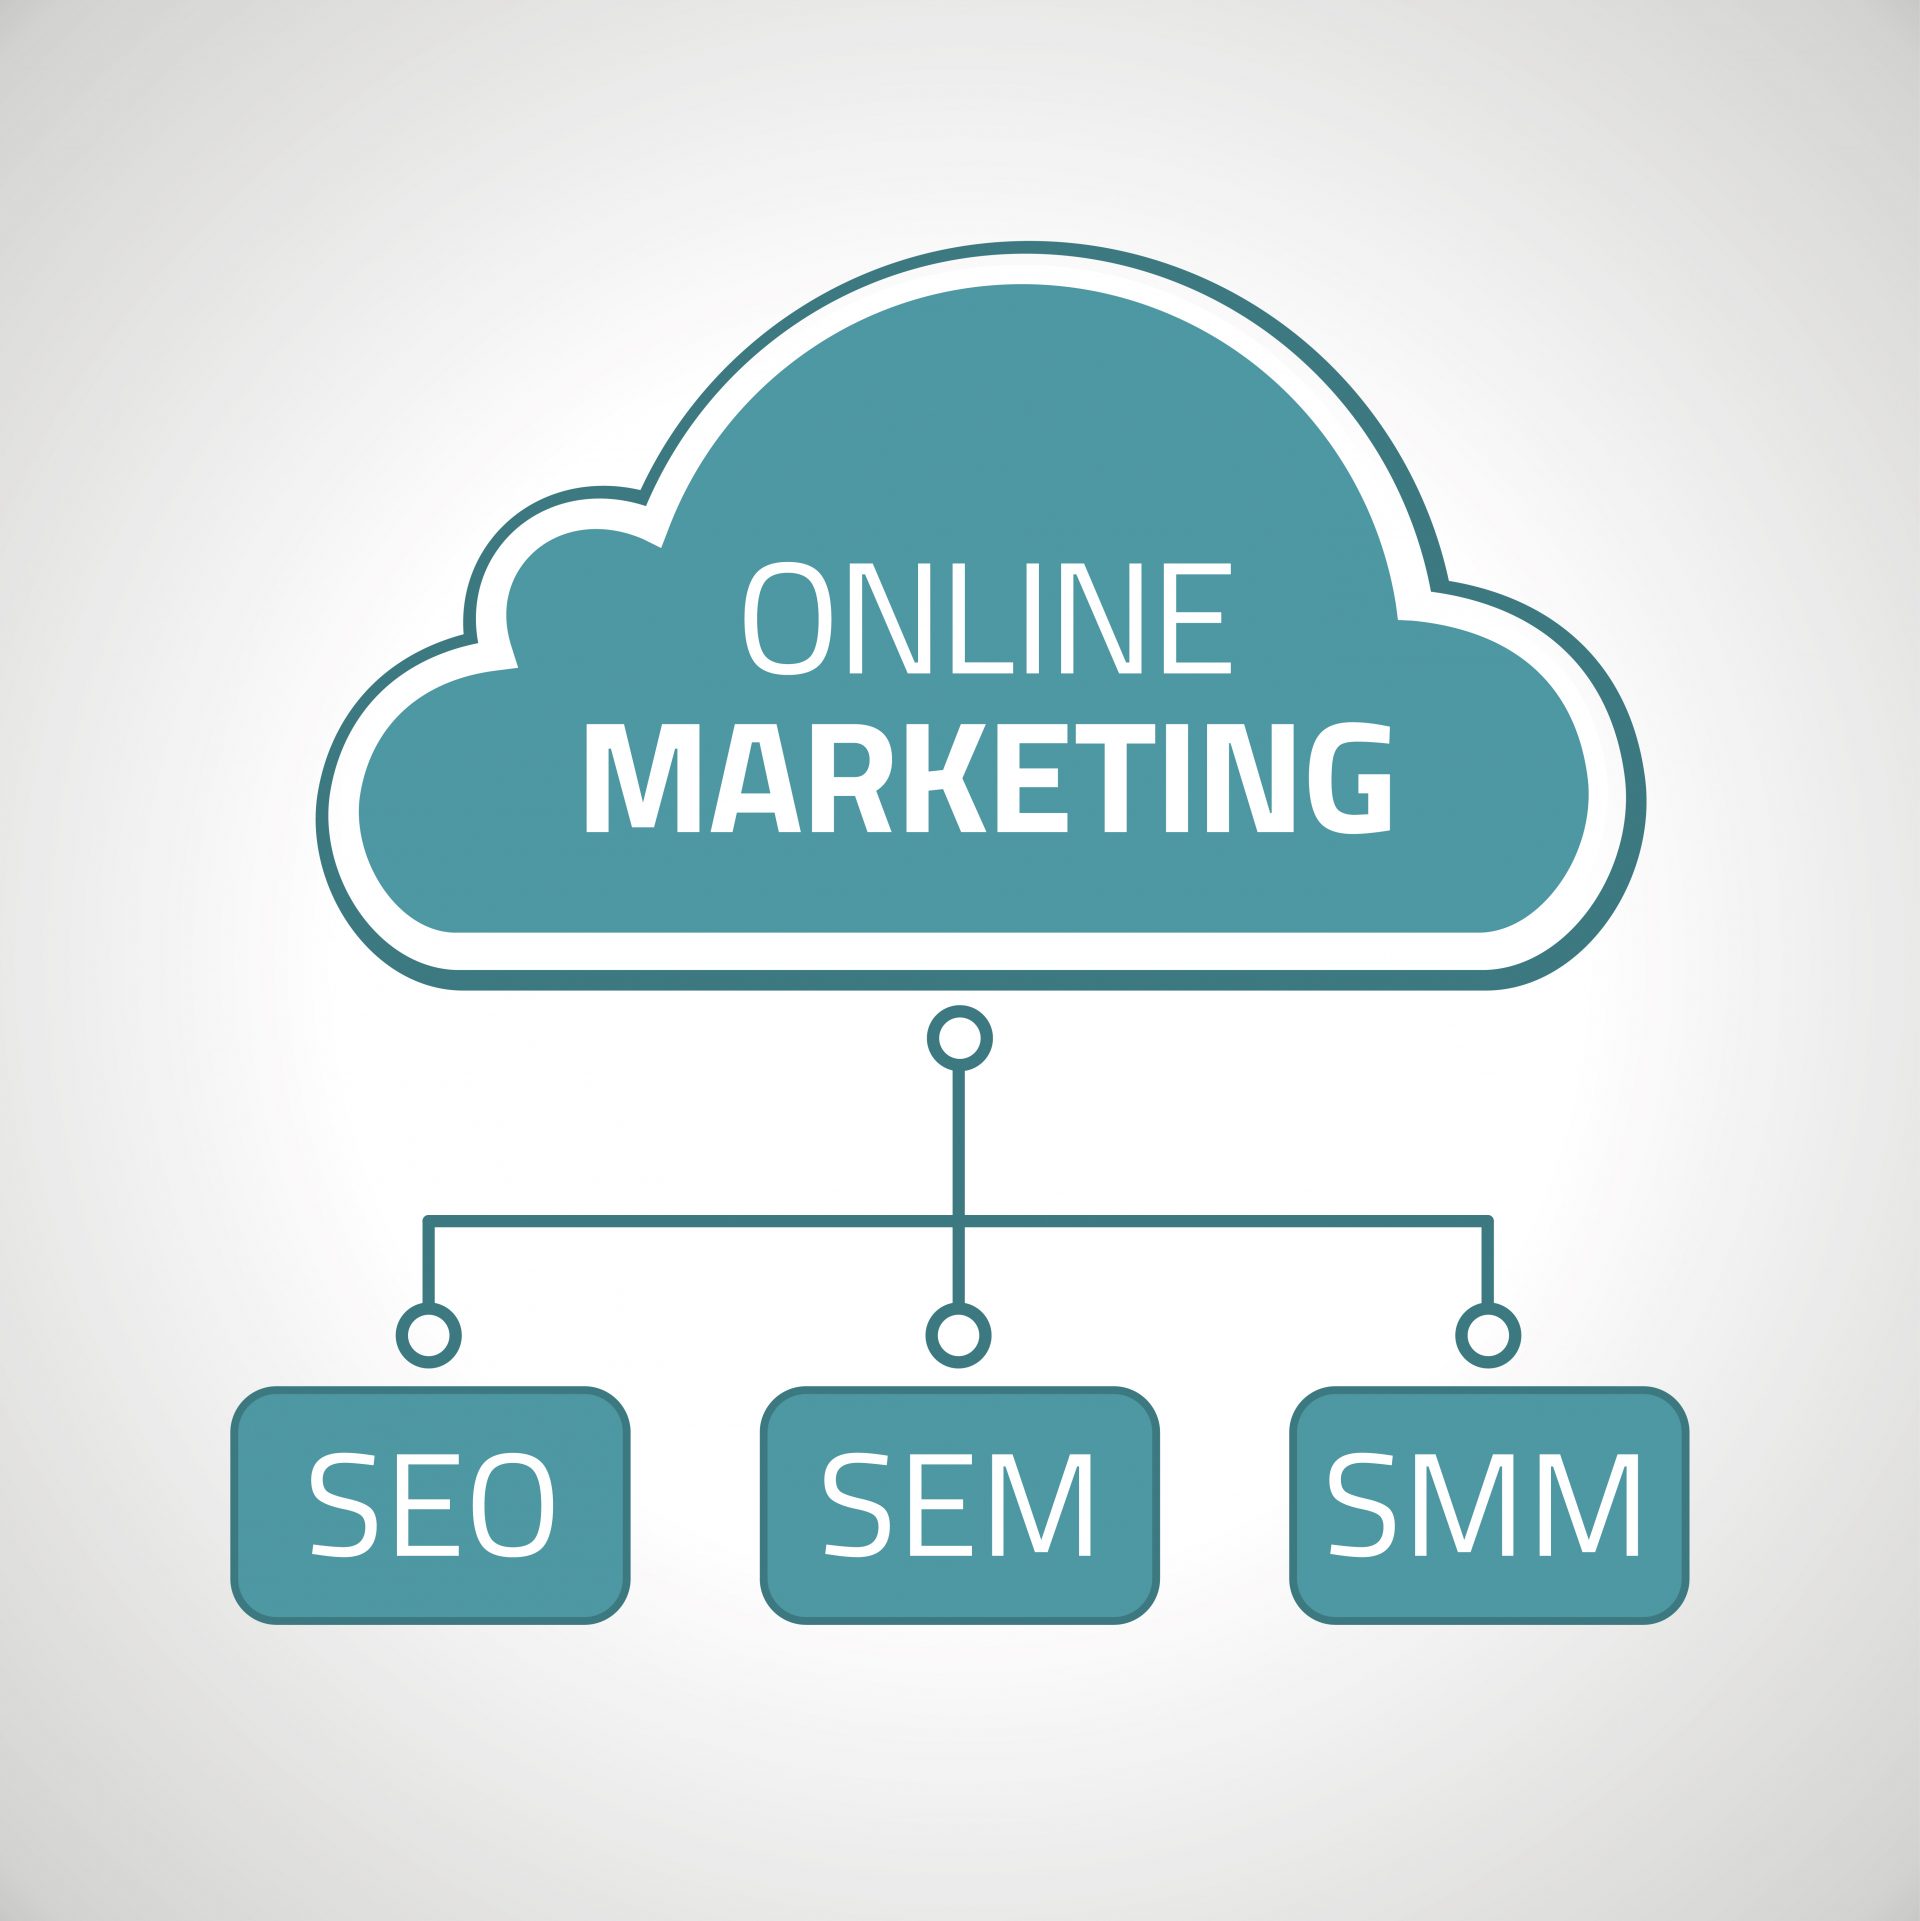 Online marketing design with SEO, SEM, SMM for websites